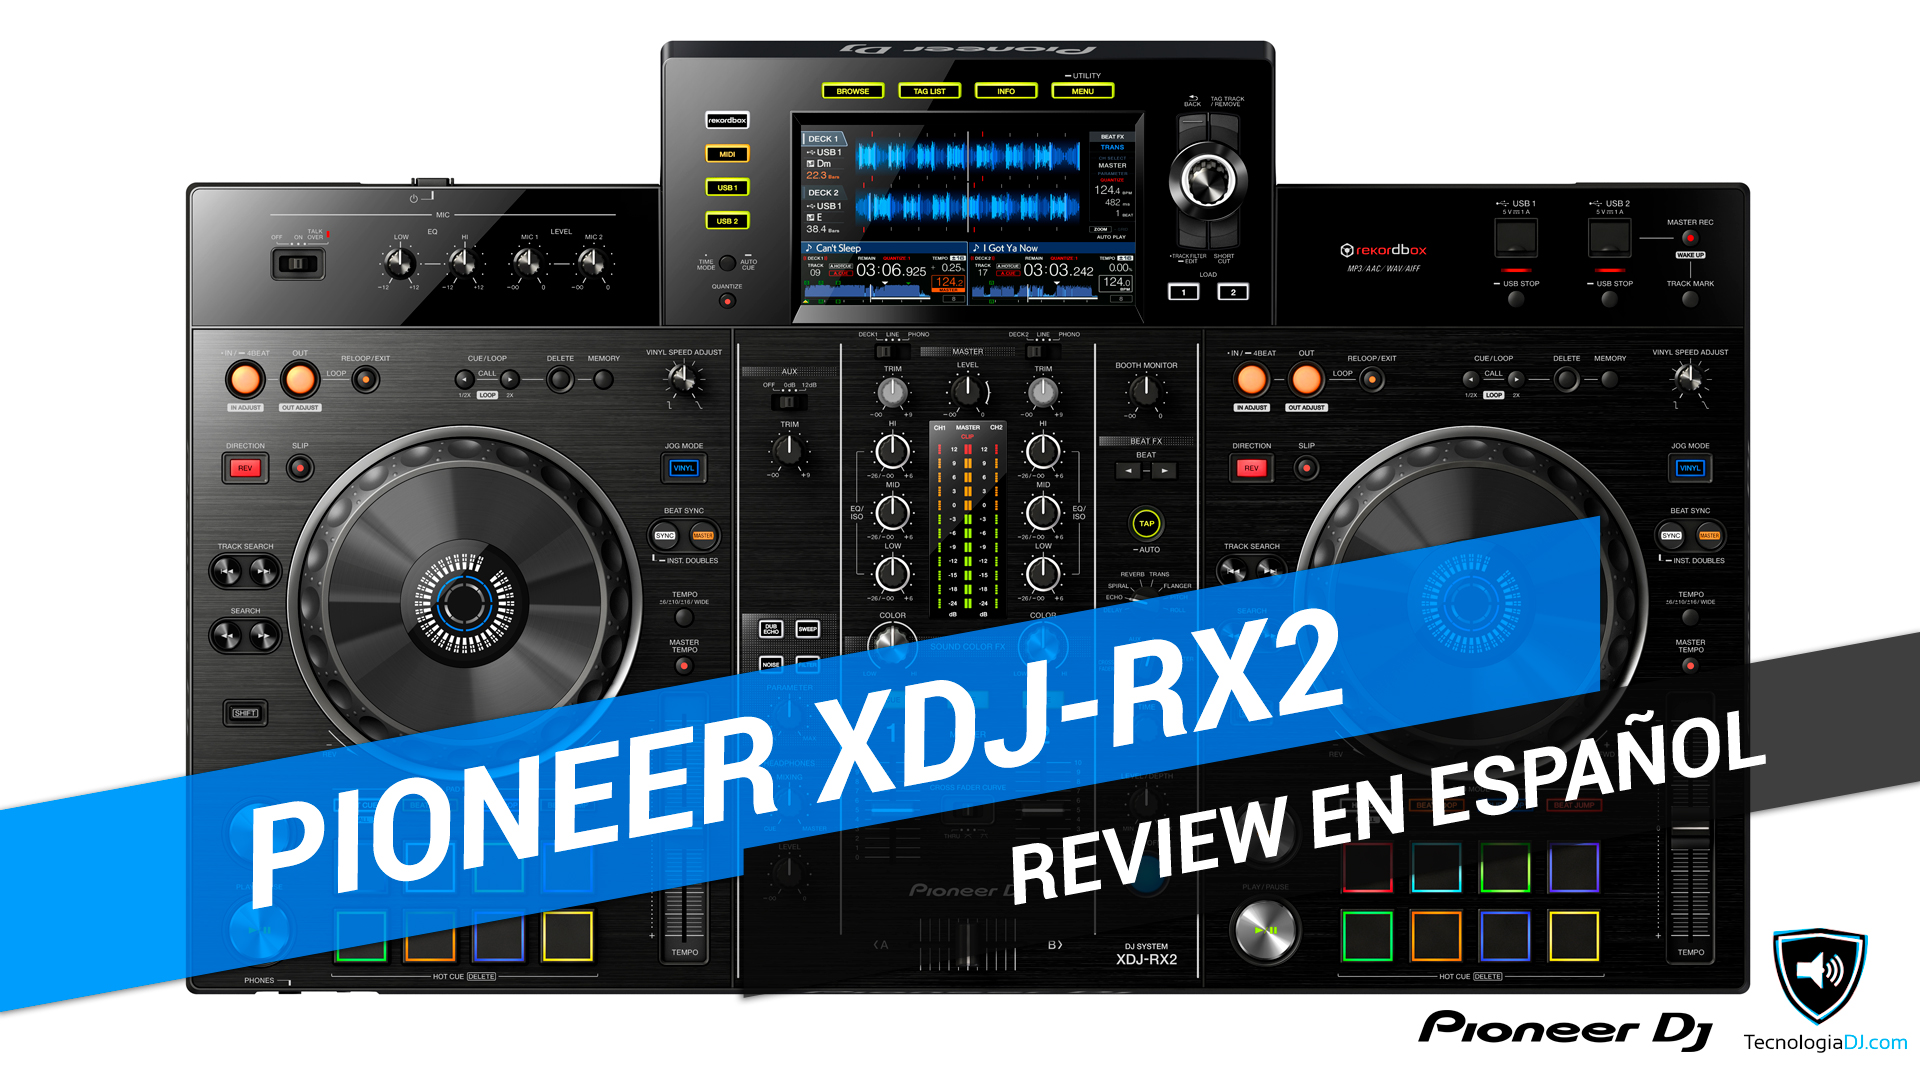 Review en español todo en uno Pioneer XDJ-RX2